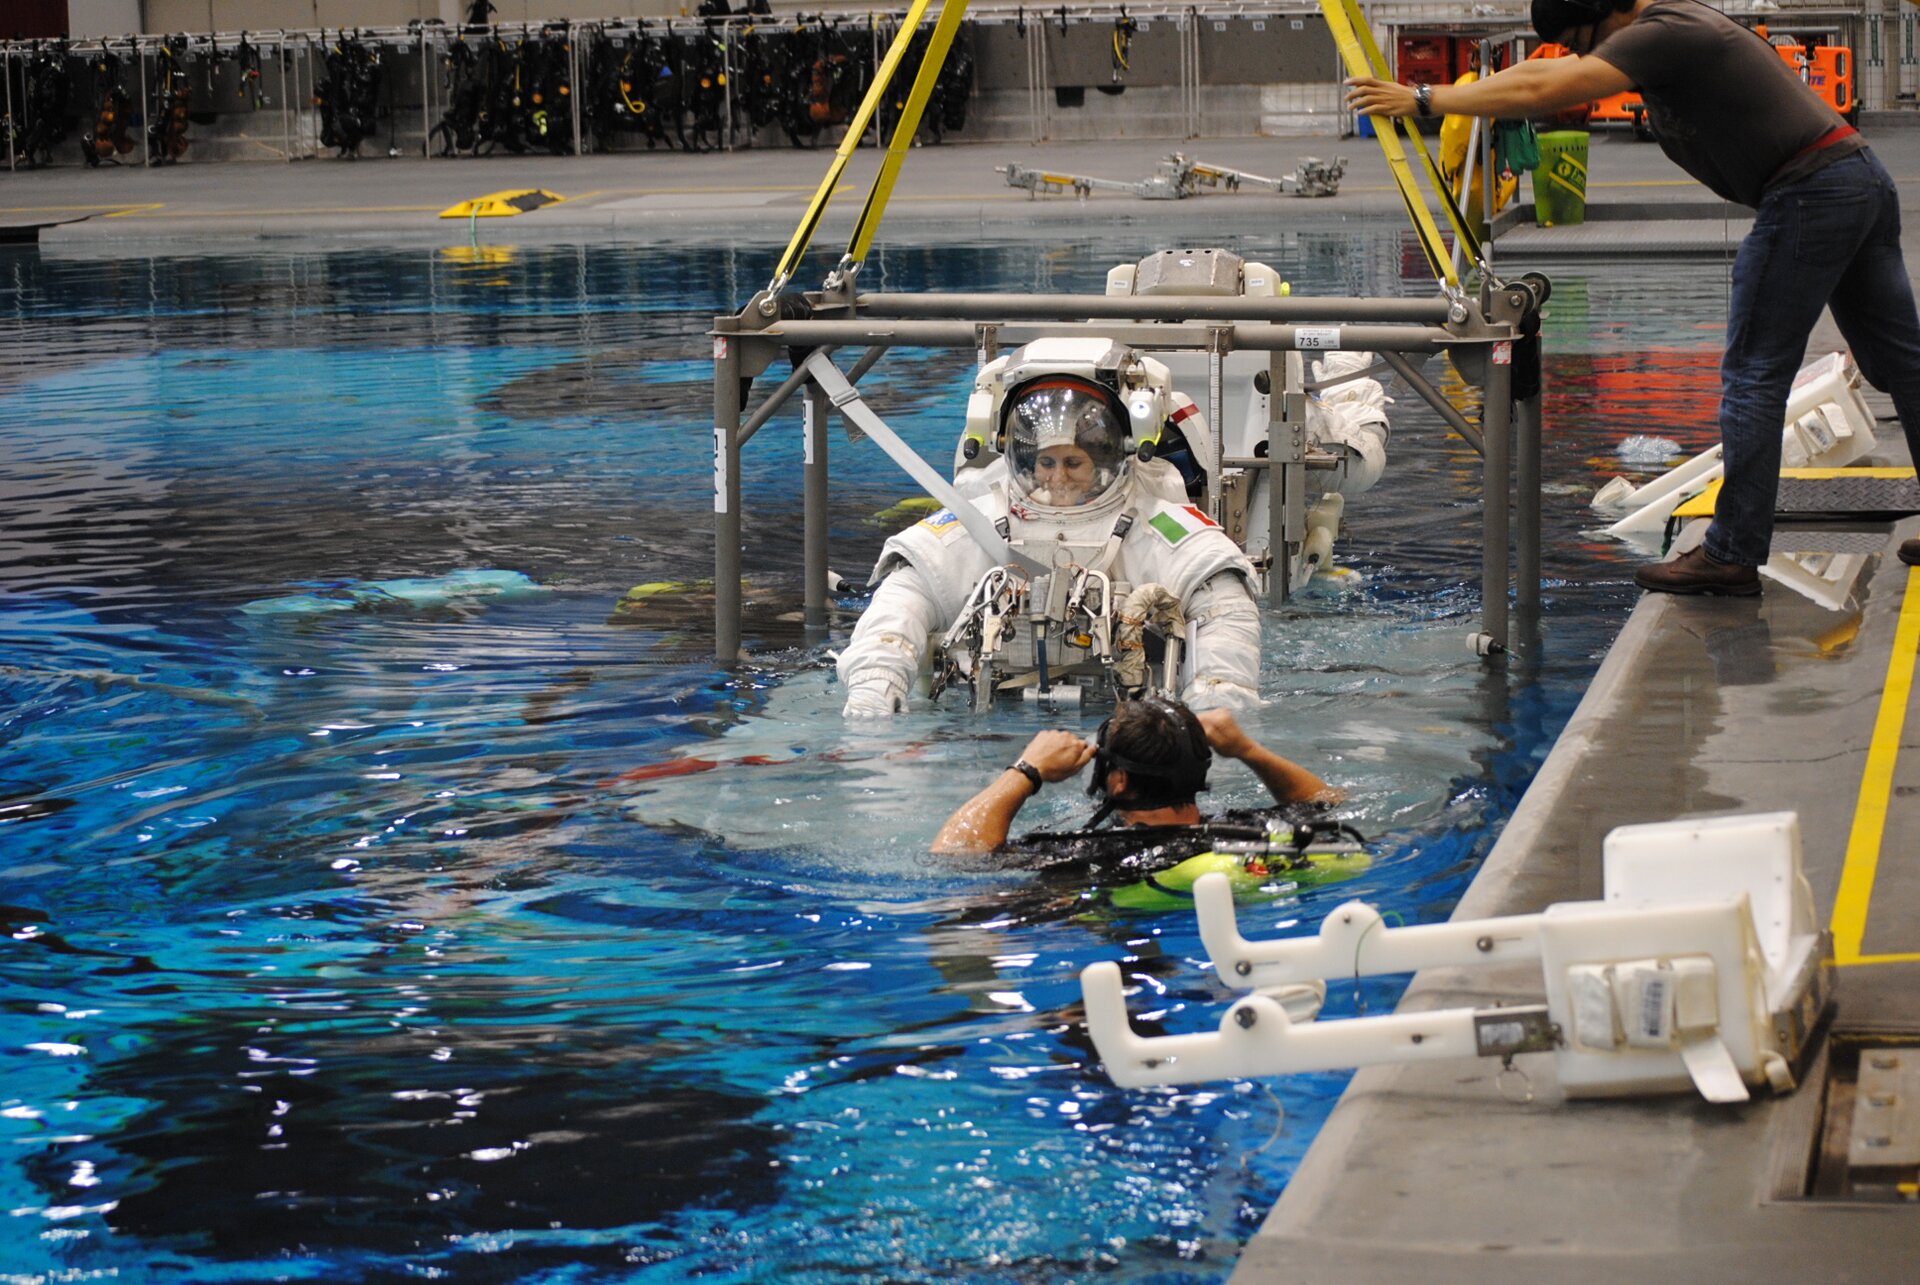 Zdjęcie przedstawia astronautkę podczas szkolenia. Astronautka ubrana jest w skafander. Ćwiczenia odbywają się w basenie. Astronautka zanurzona jest do połowy. W basenie znajduje się również mężczyzna. Mężczyzna wyposażony jest w sprzęto do nurkowania.